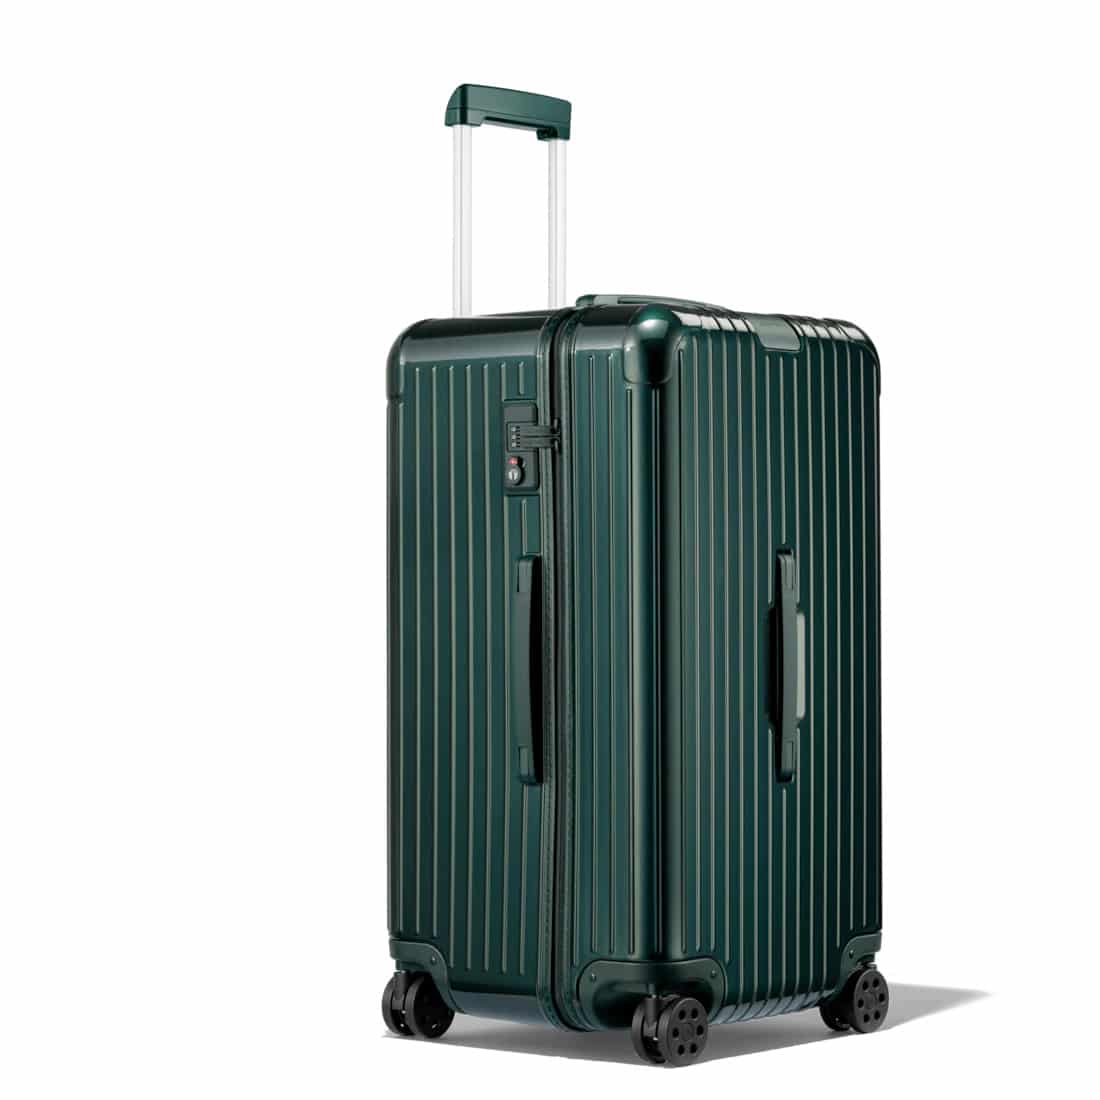 How Long Does Rimowa Luggage Last? - Luggage Unpacked